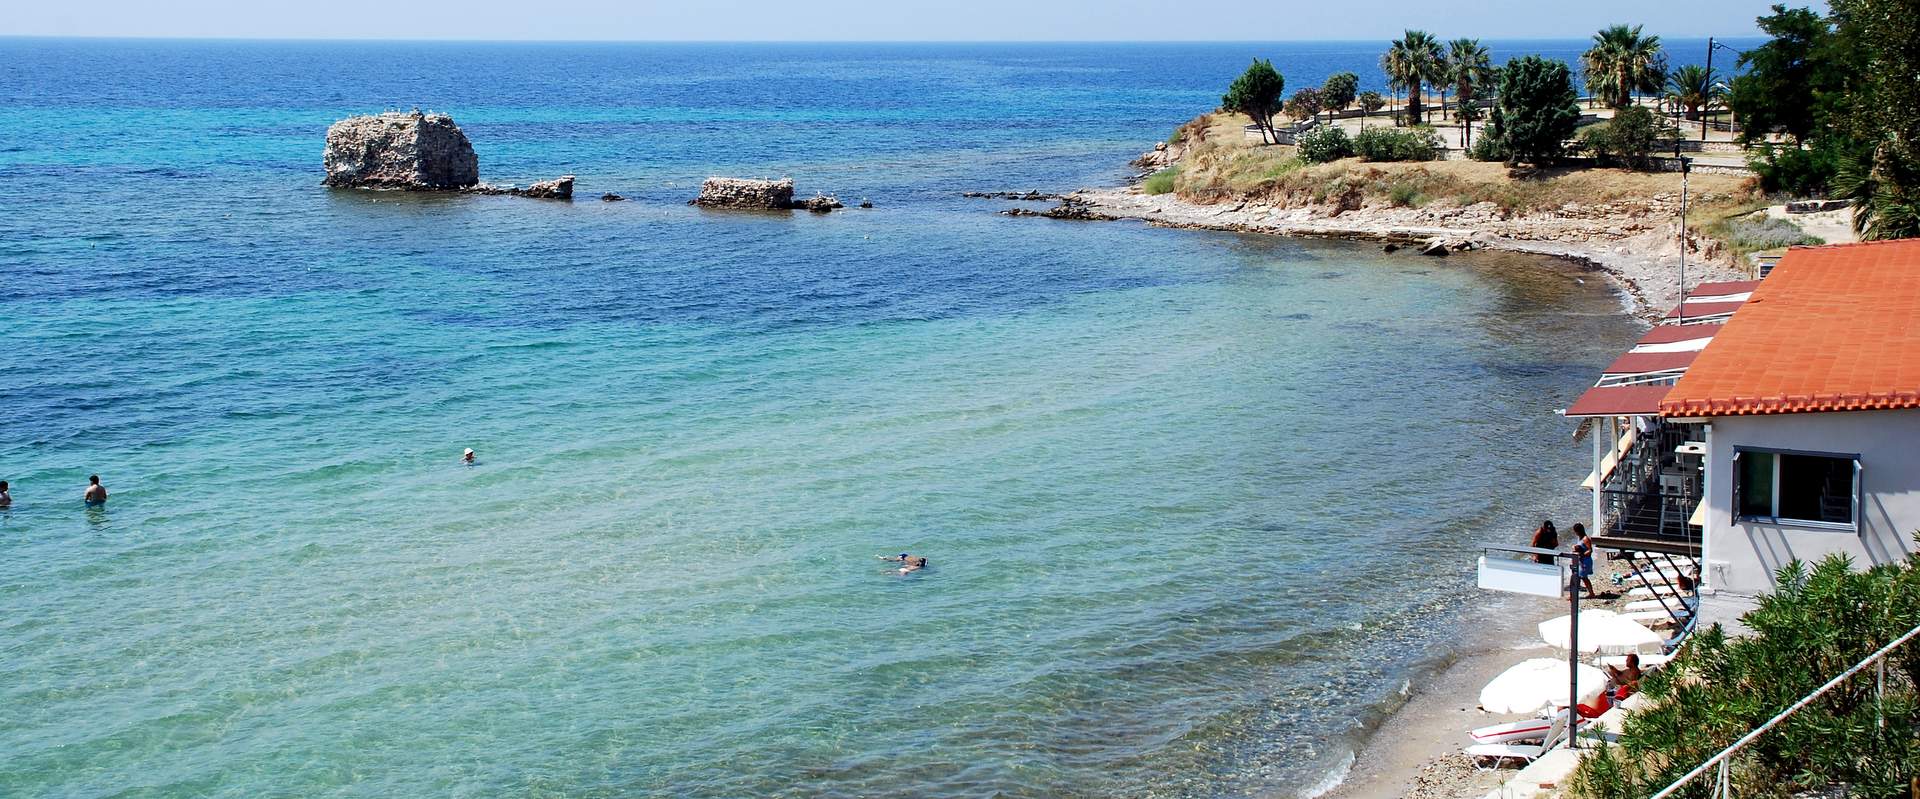 Δυτική Ποτίδαια παραλία, Χαλκιδική, Ελλάδα